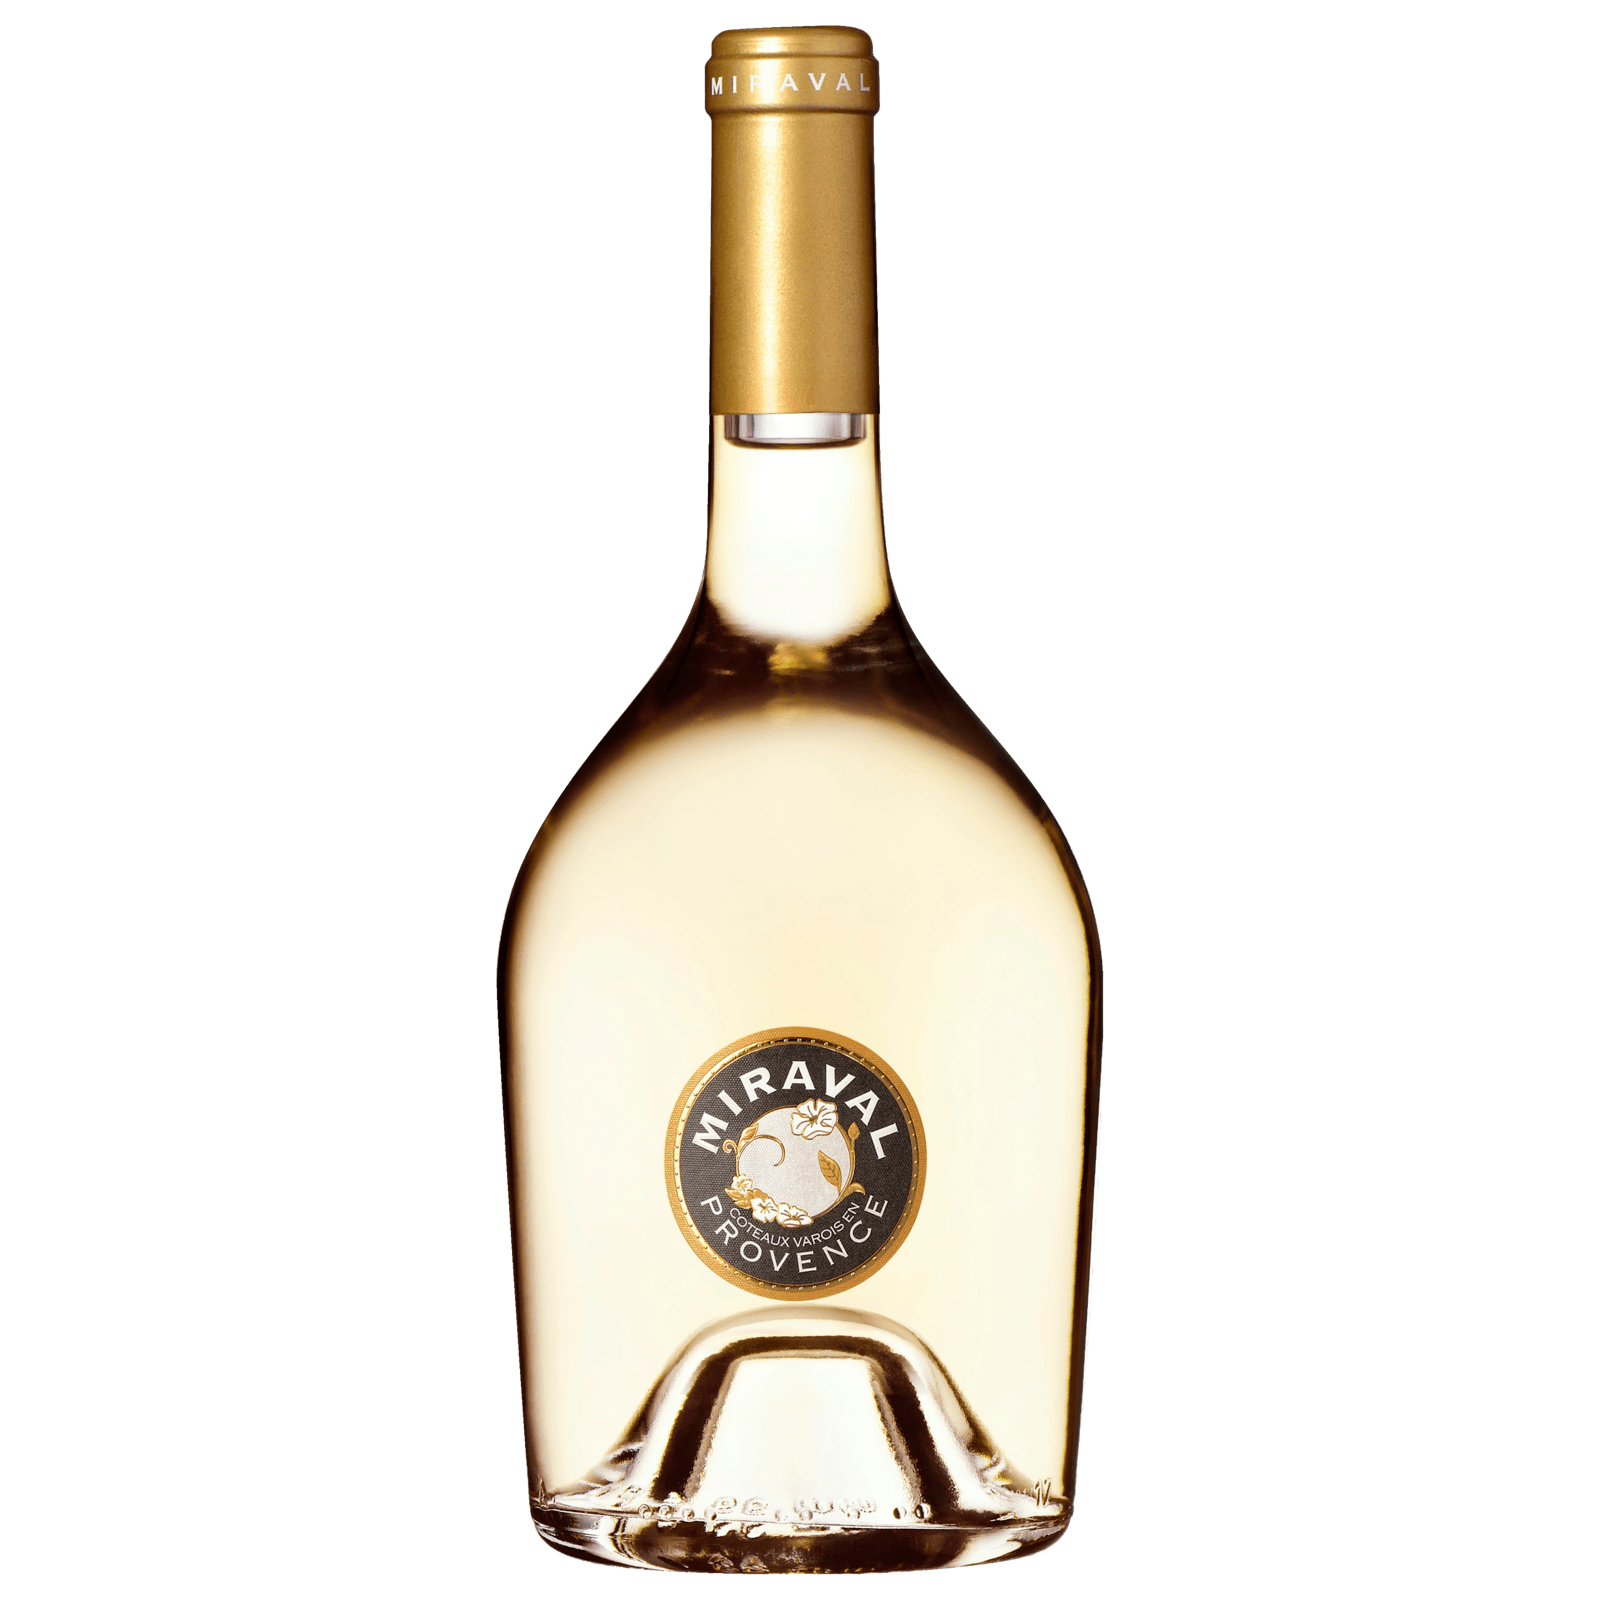 Irrepetible Manchuela Weißwein 3,99€ von 2020 für DO Lidl trocken,